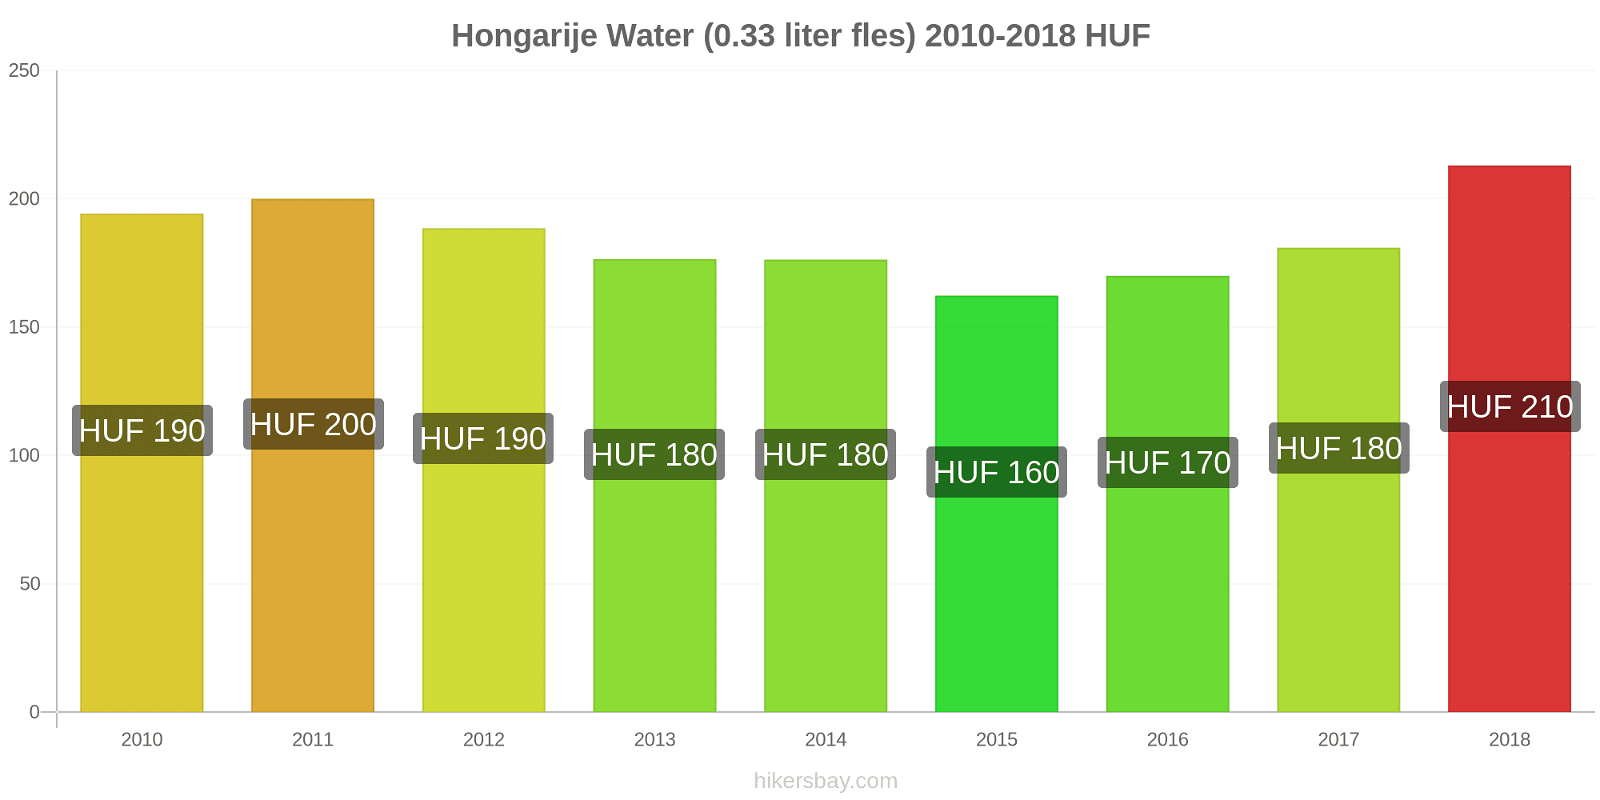 Hongarije prijswijzigingen Water (0,33 liter fles) hikersbay.com